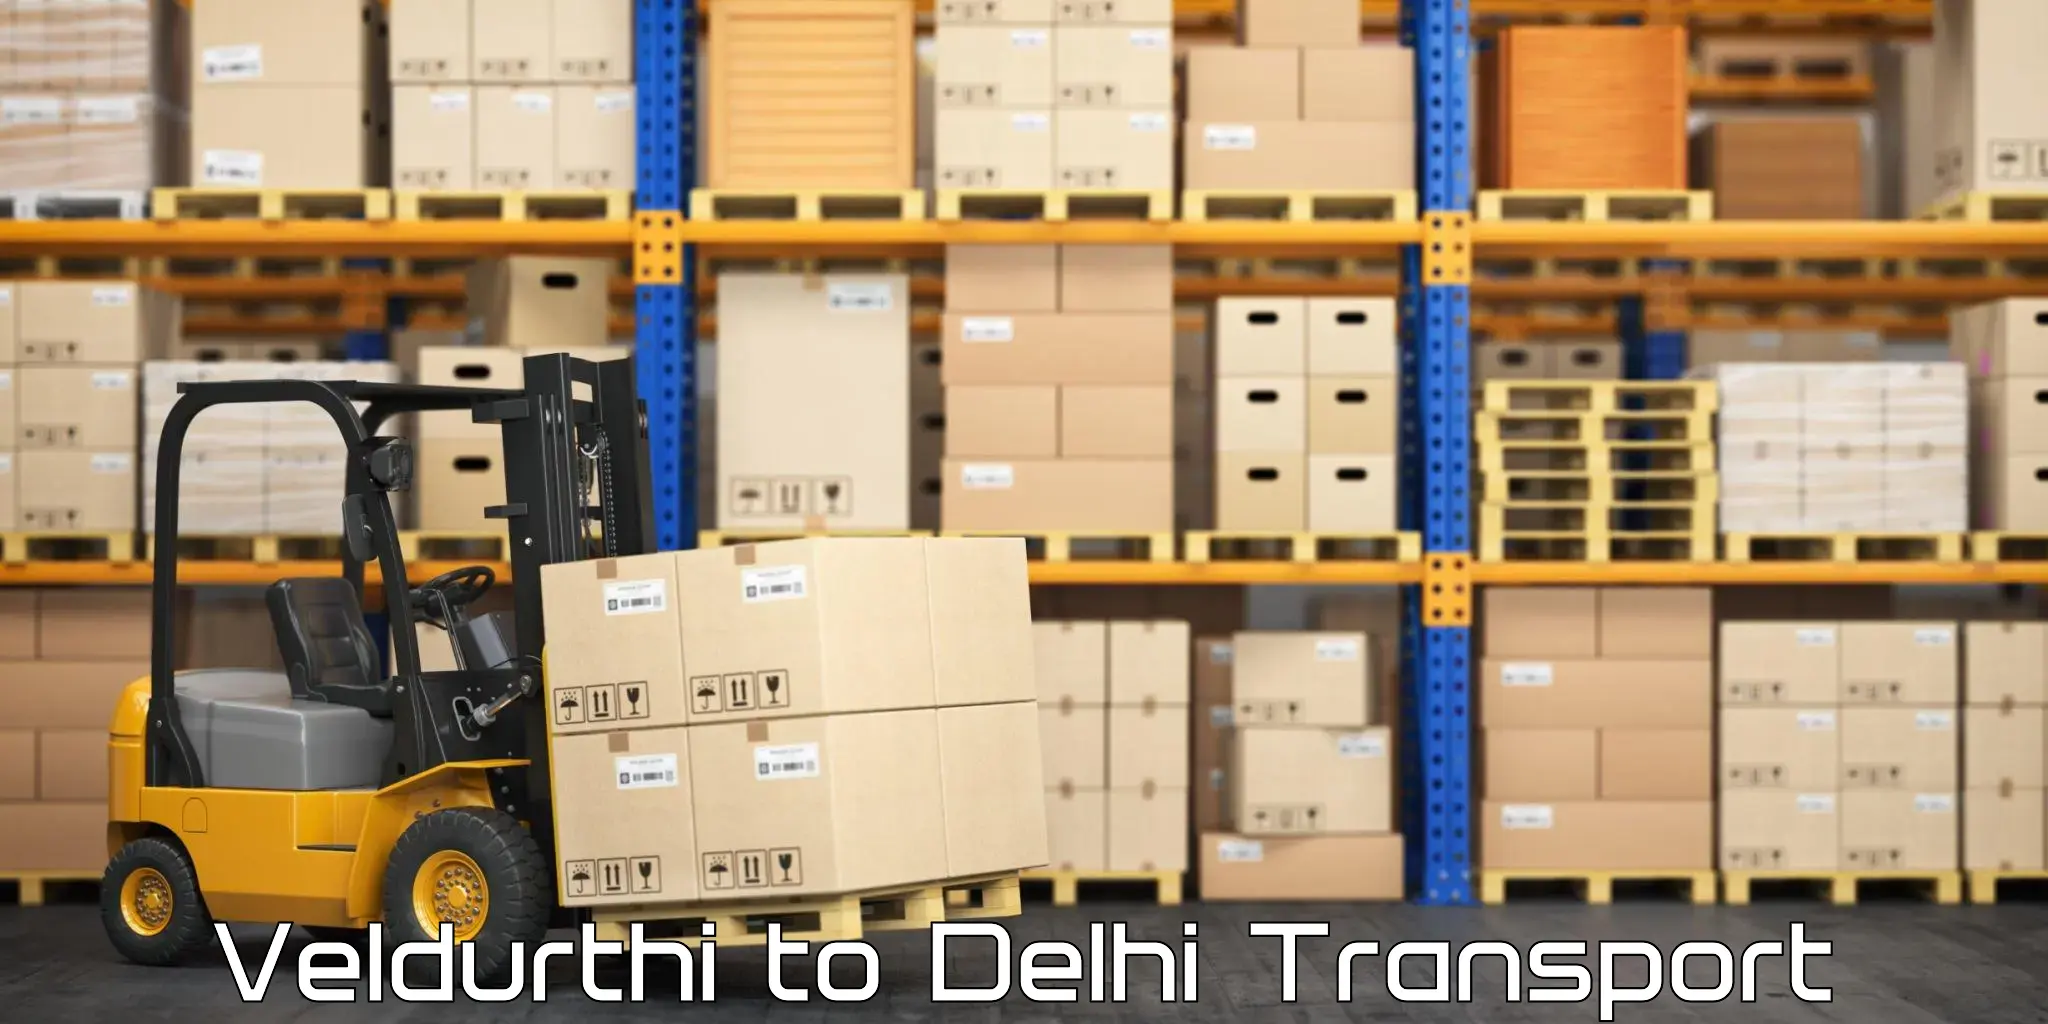 Daily parcel service transport Veldurthi to NIT Delhi